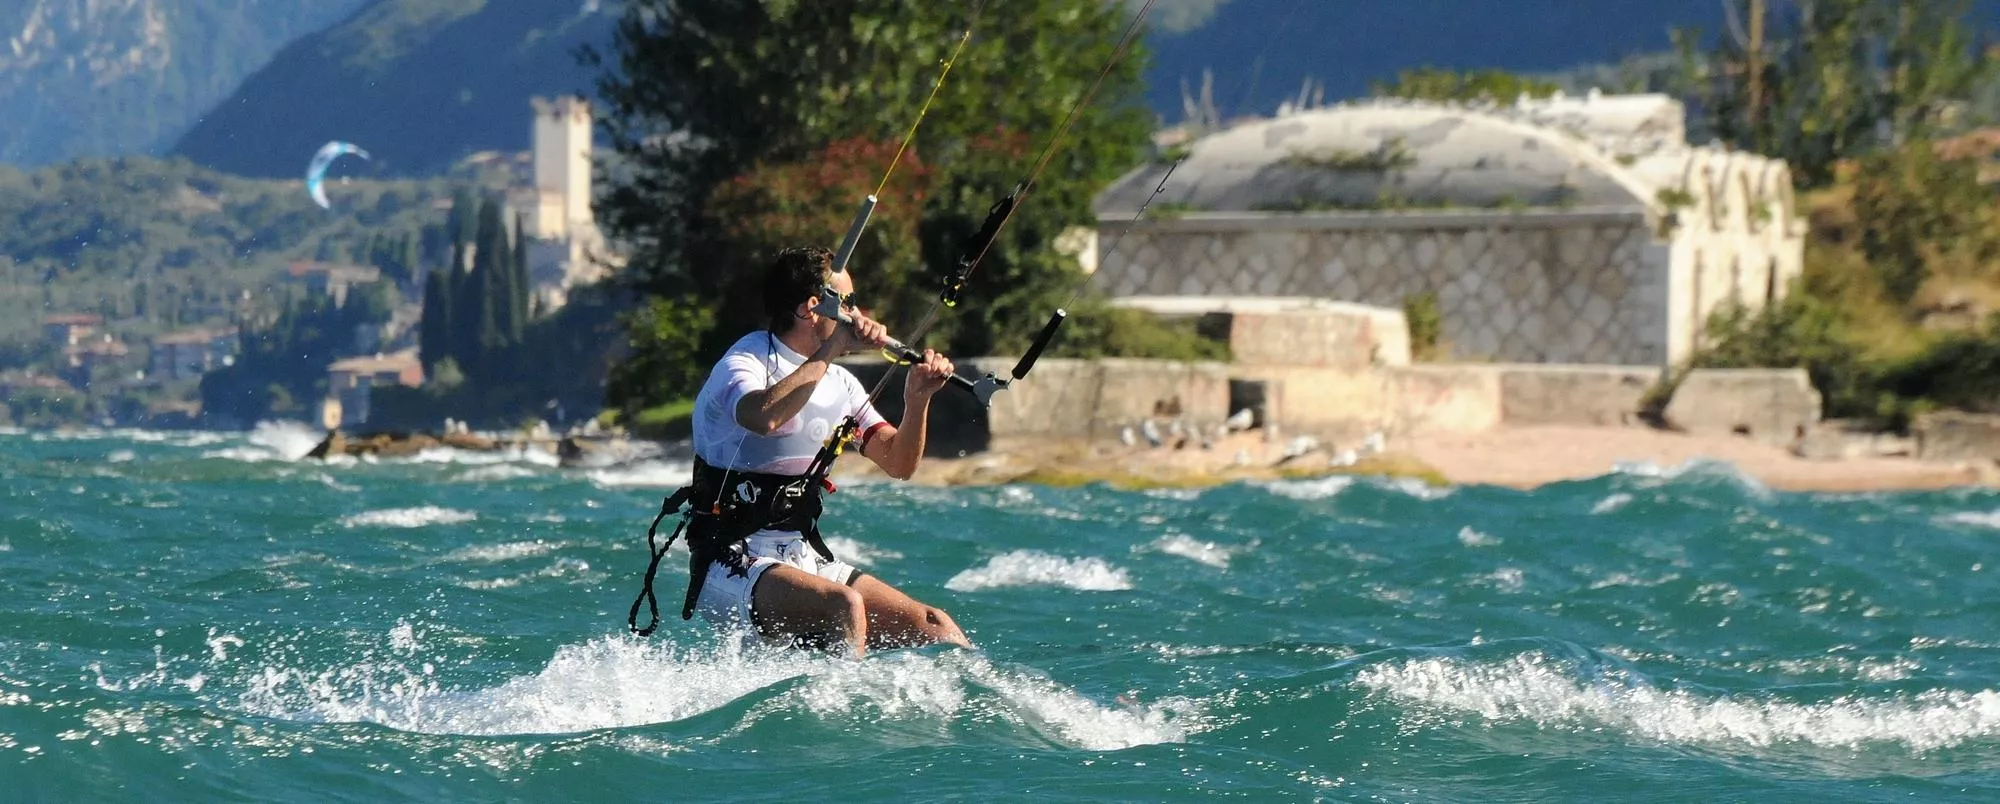 Xkite in Italy, Europe | Kitesurfing - Rated 1.4